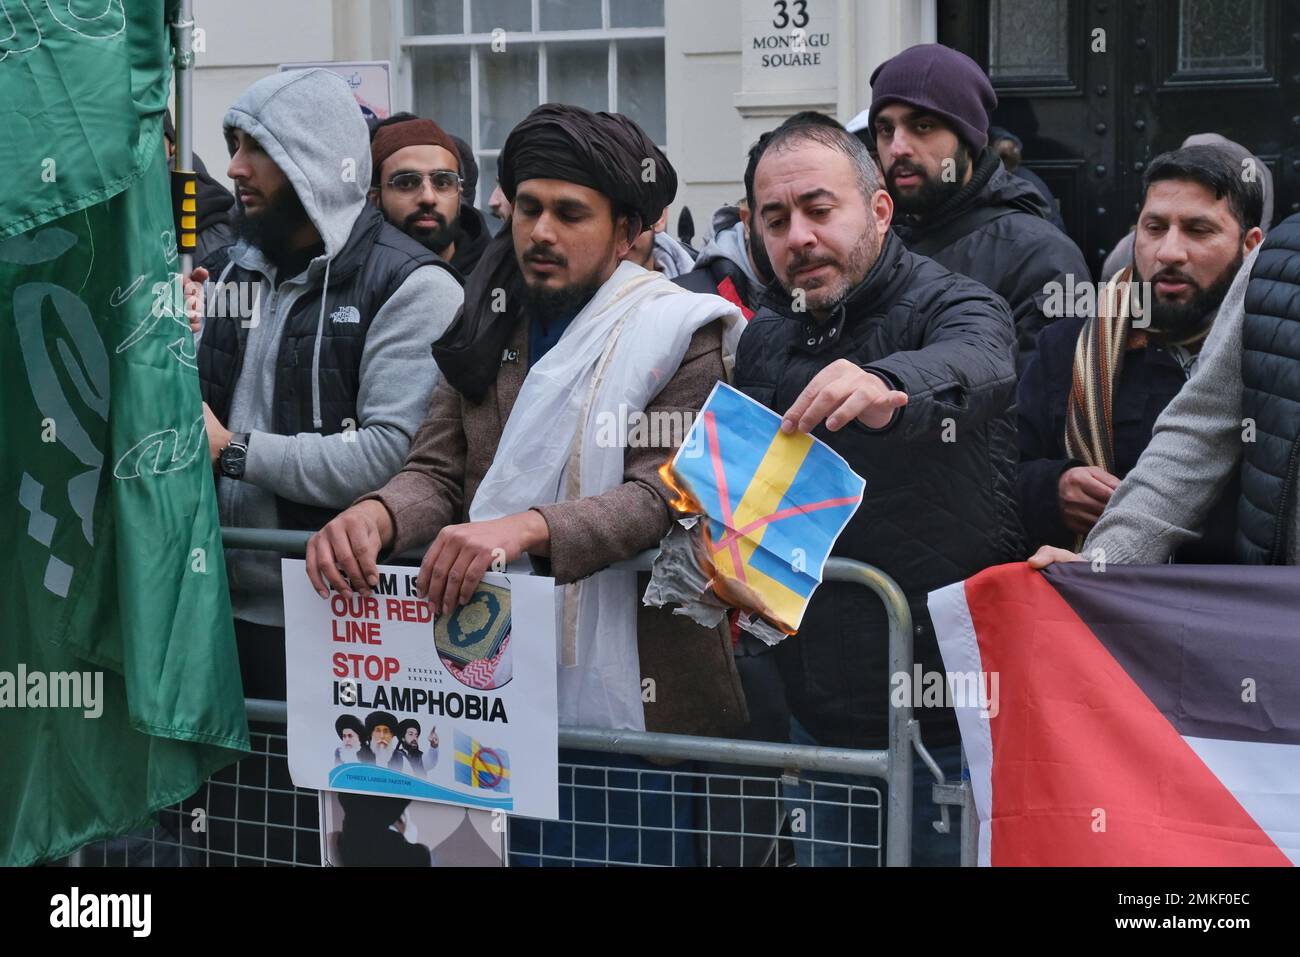 London, Großbritannien. 28. Januar 2023 Ein Demonstrant verbrennt ein Bild der schwedischen Flagge. Muslimische Demonstranten haben sich versammelt, um die Schändung des Koran durch den rechtsextremen Politiker Rasmus Paludan anzuprangern - durch Verbrennung und Edwin Wagensveld in den Niederlanden, der den heiligen Text zerrissen hat. Das ursprüngliche Feuer des dänisch-schwedischen Paludan wurde vor der türkischen Botschaft in Stockholm durchgeführt, und die schwedische Regierung versuchte, sich von der Demonstration zu distanzieren. Kredit: Elfte Stunde Fotografie/Alamy Live News Stockfoto